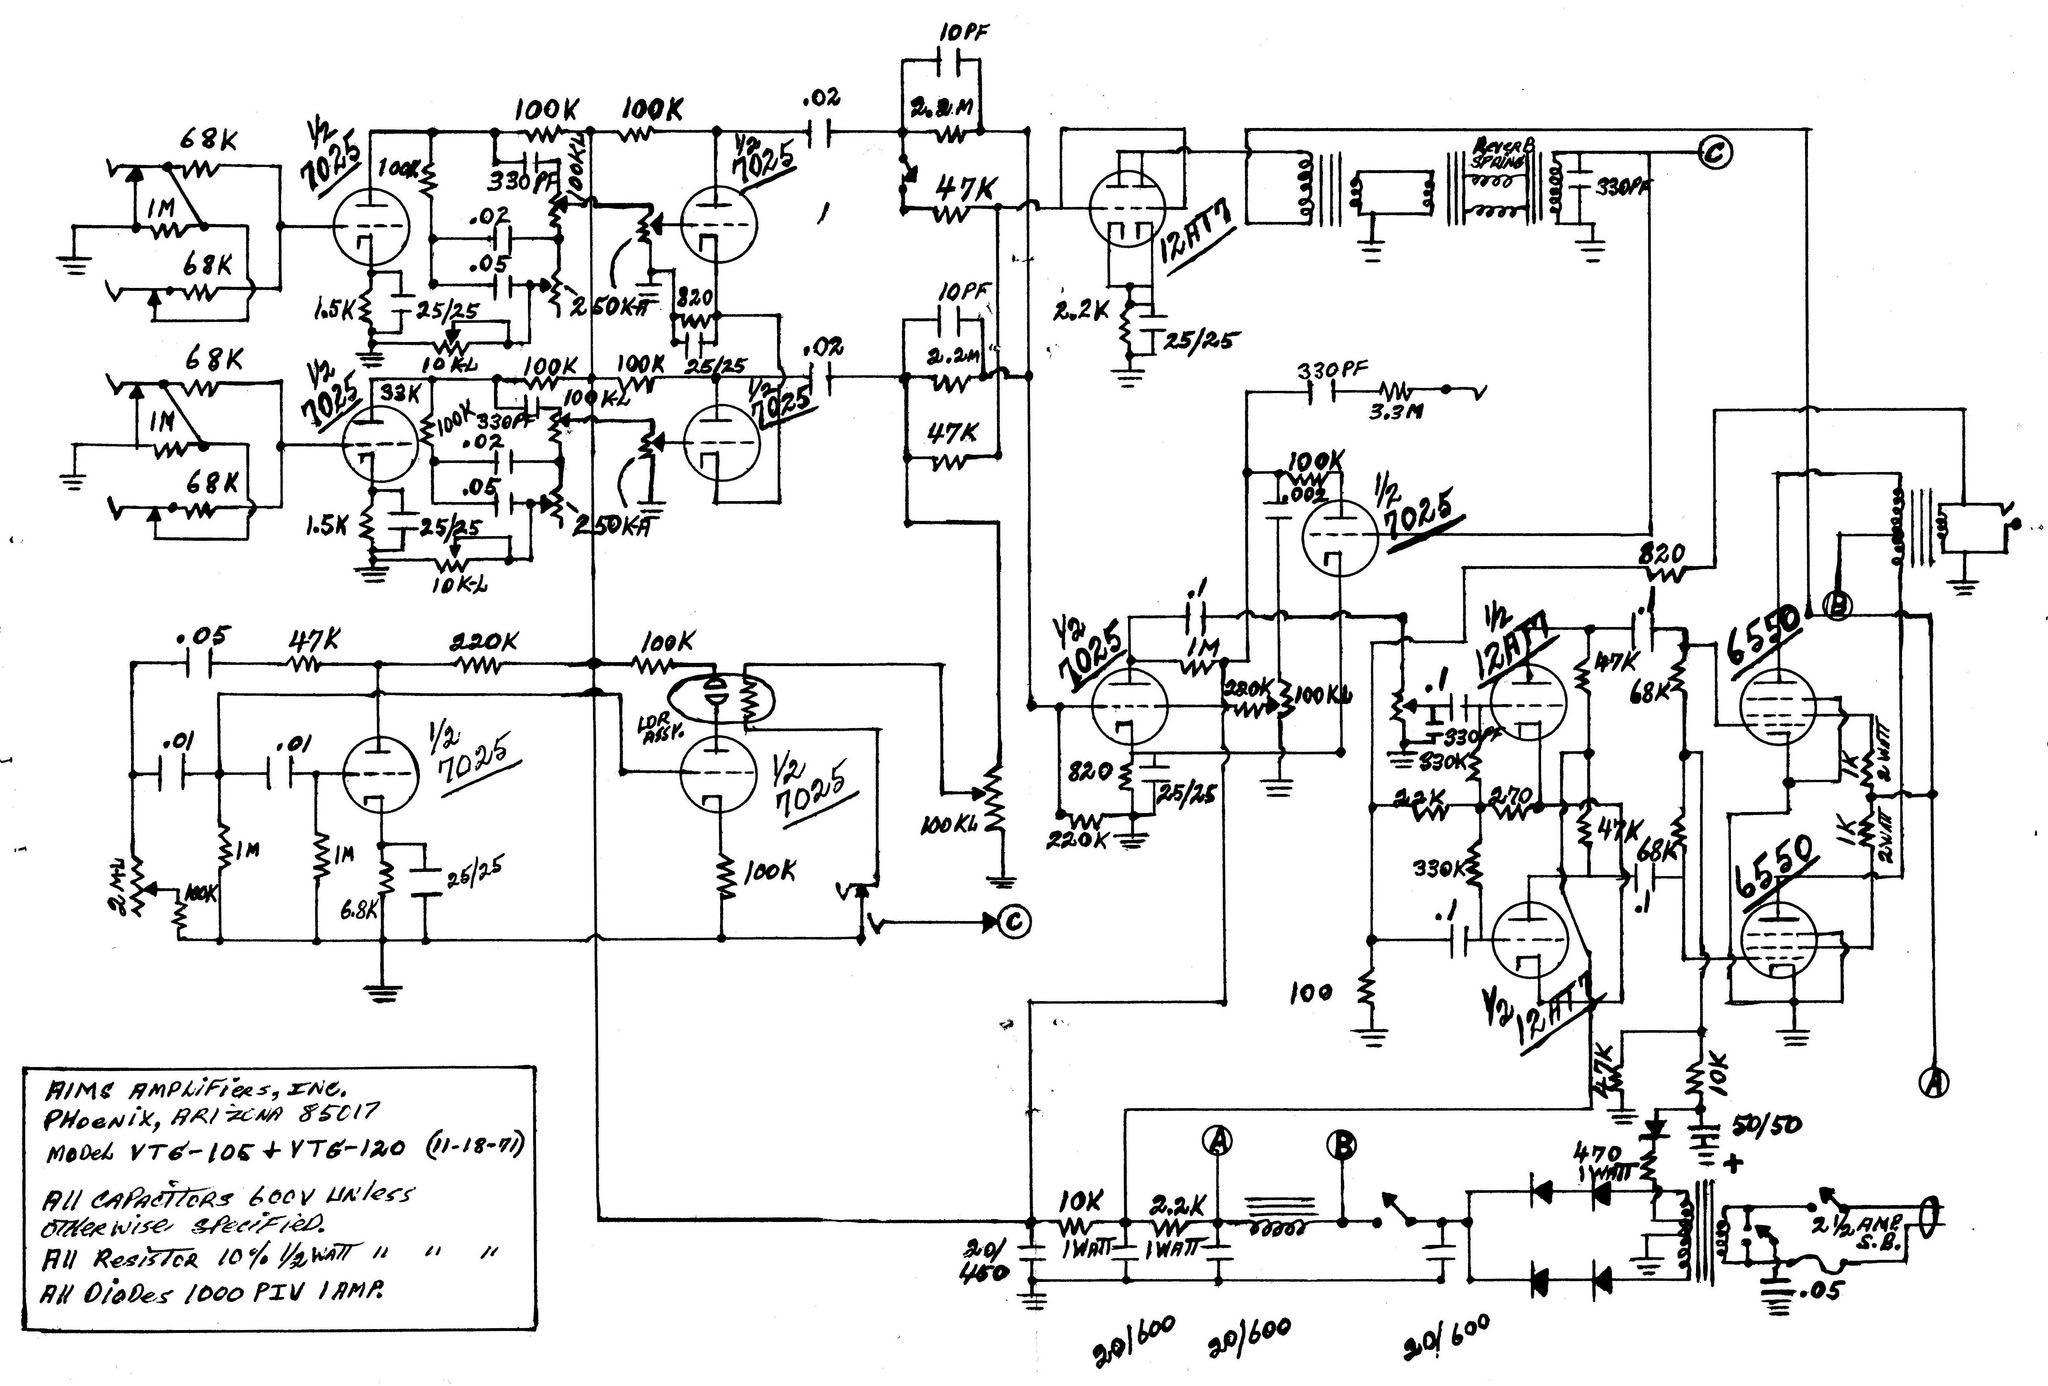 Doerr Compressor Motor Lr22132 Wiring Diagram | Wiring Library - Doerr Electric Motor Lr22132 Wiring Diagram